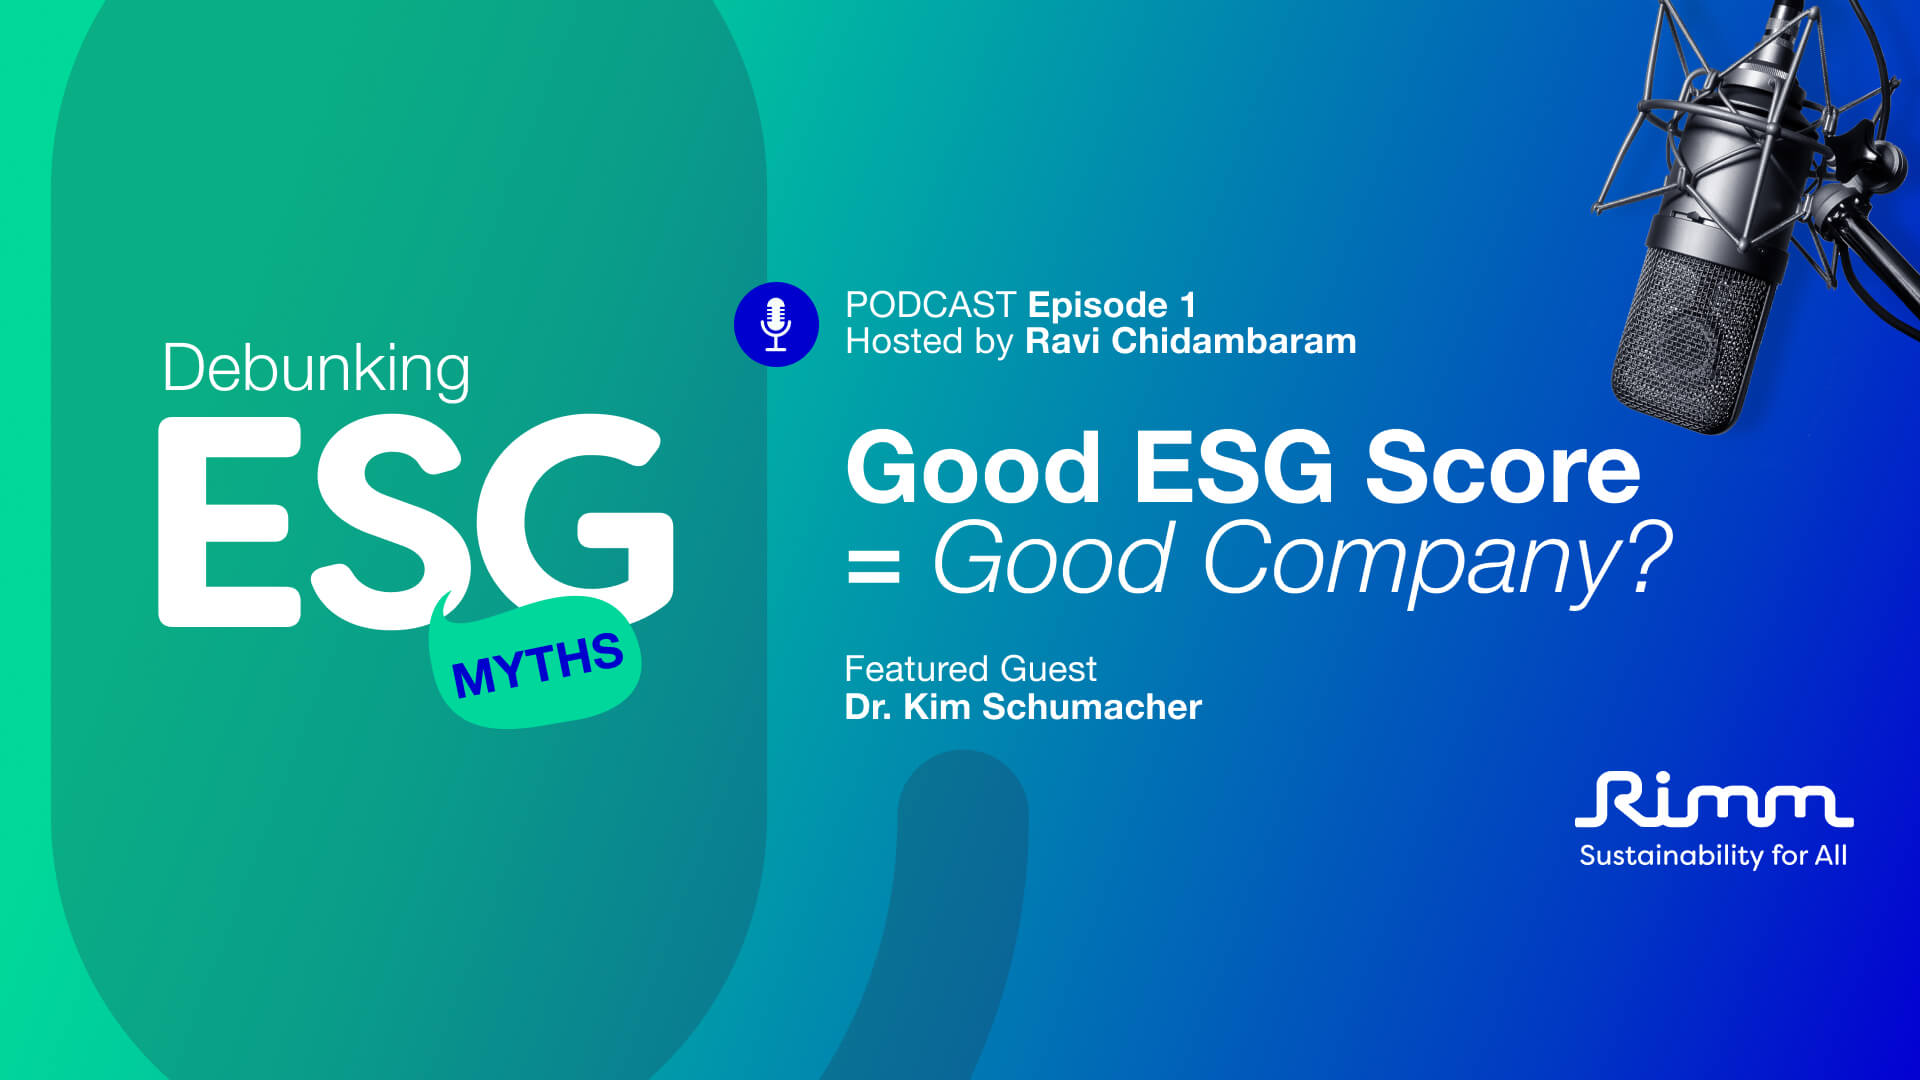 Debunking ESG Myths Episode 1